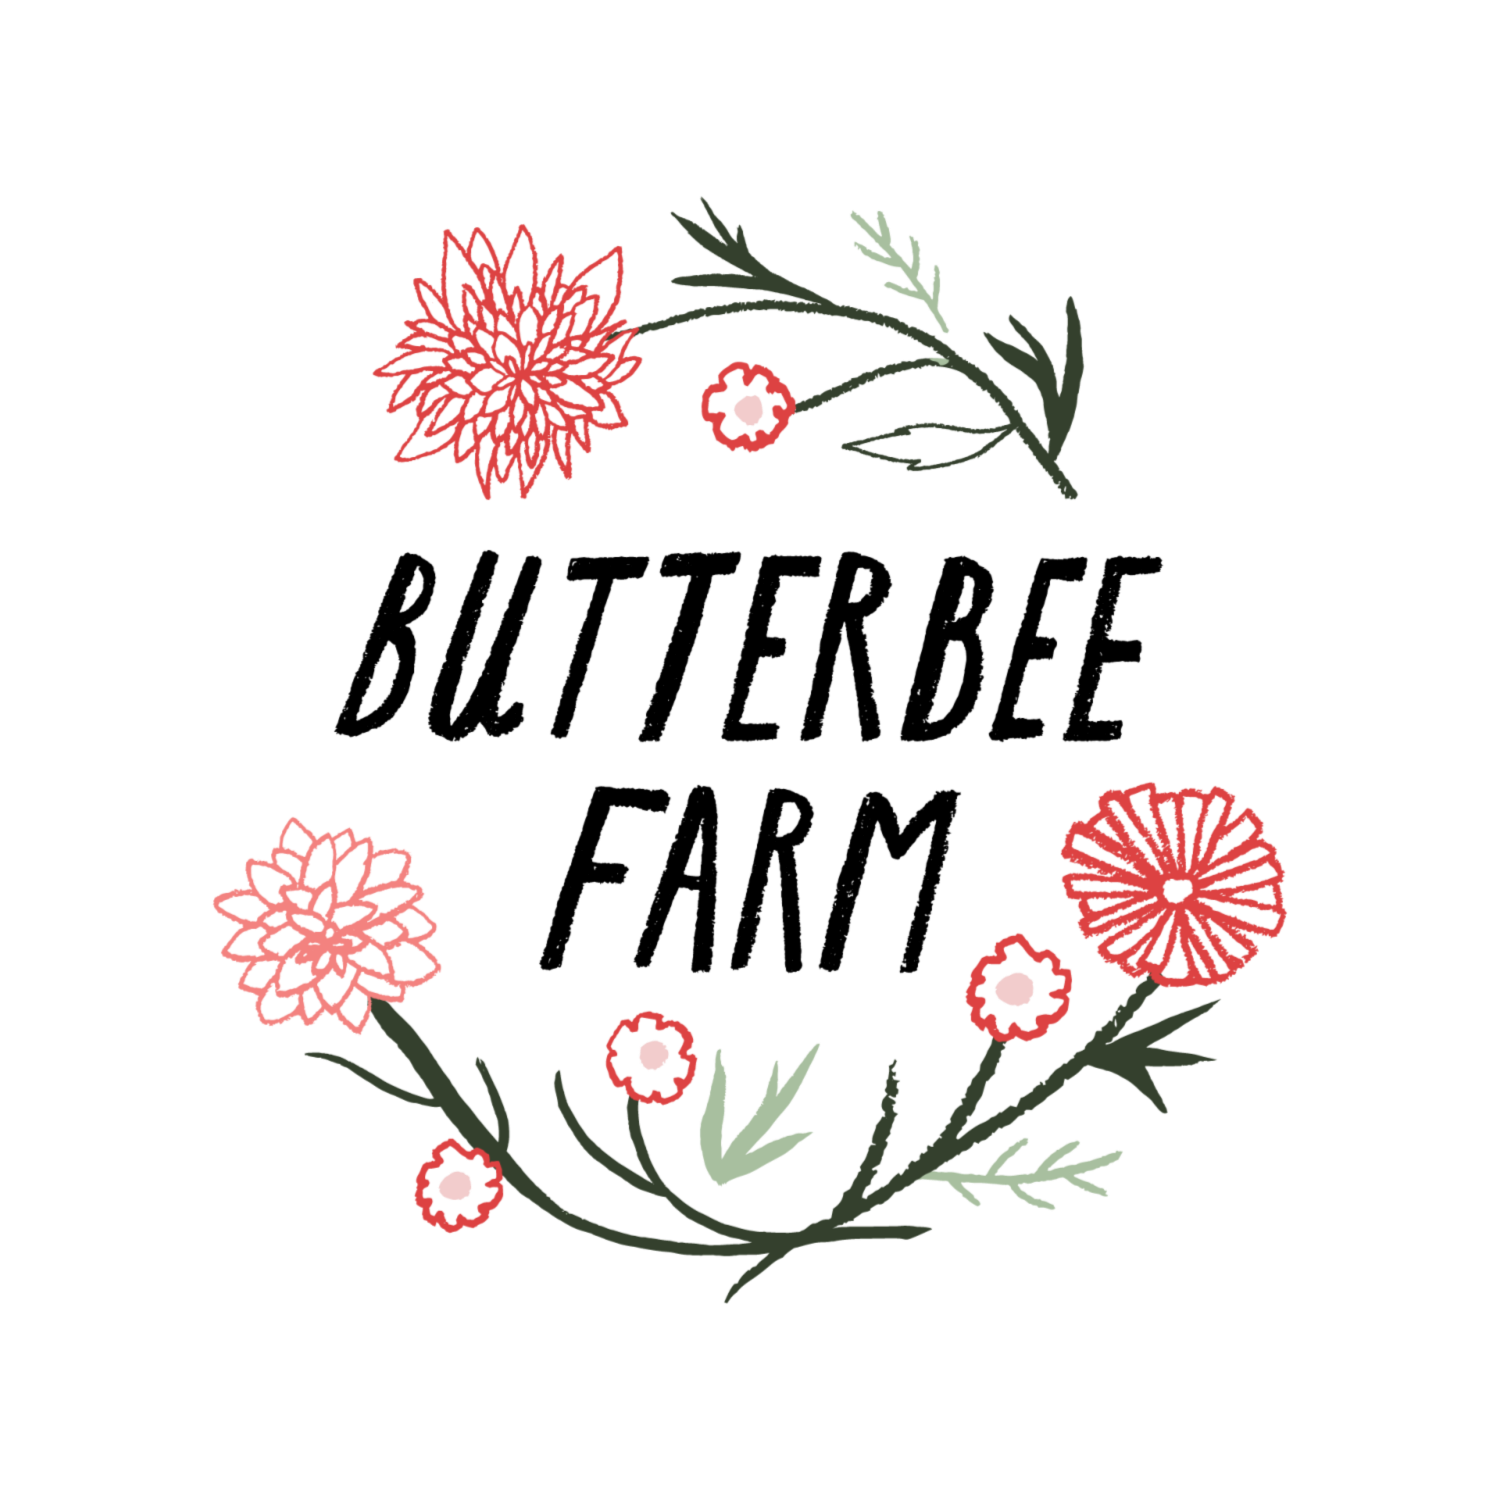  Butterbee Farm